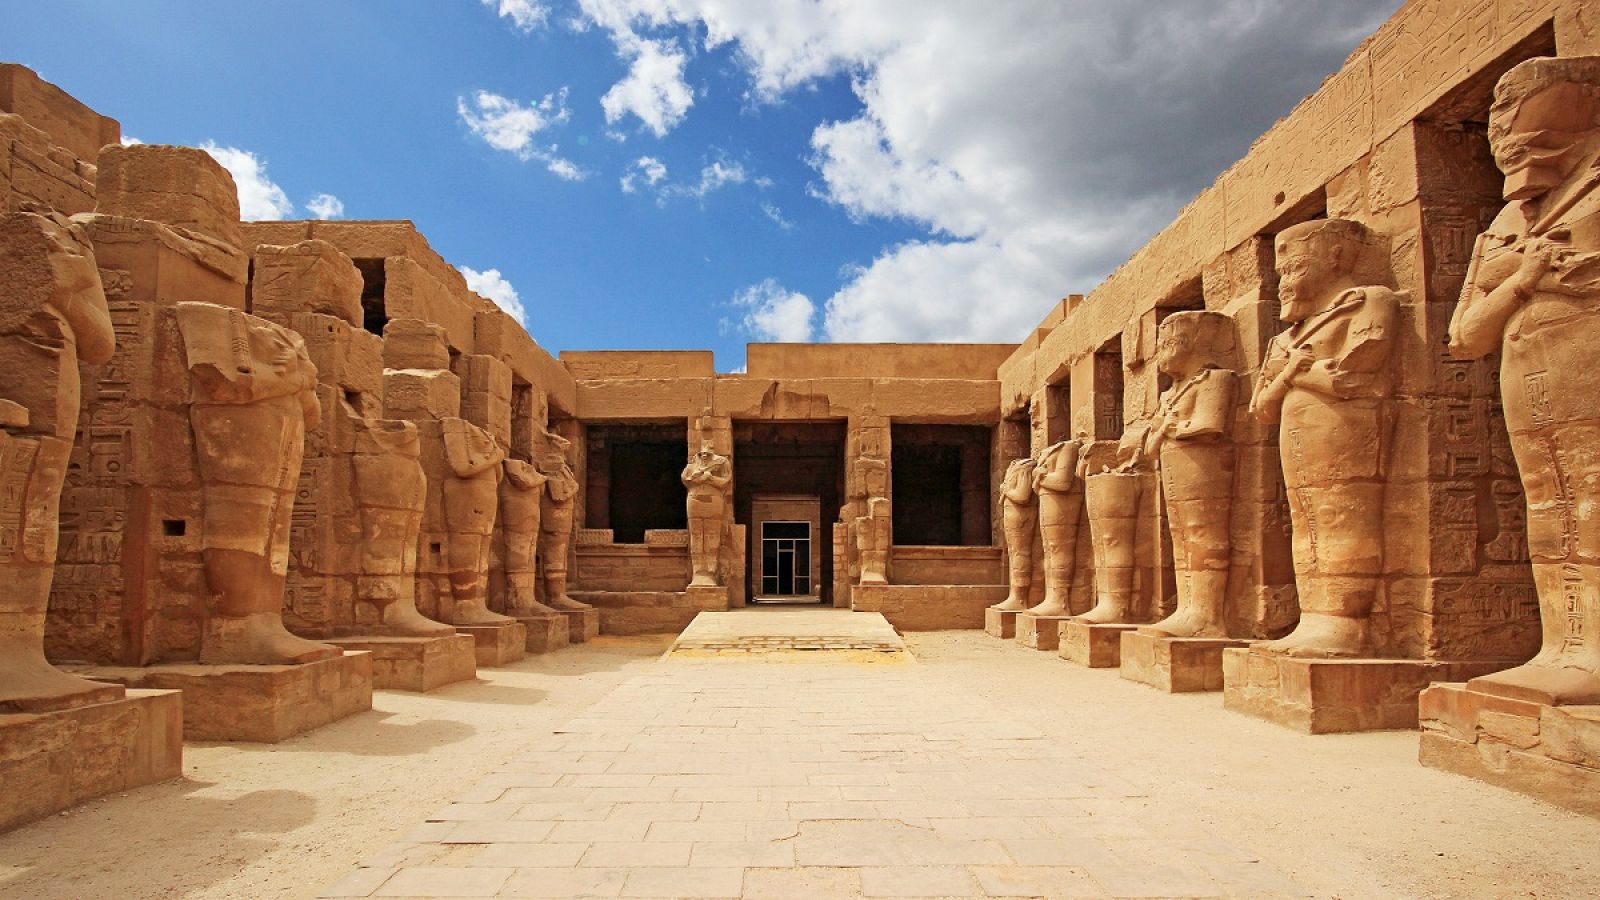 El templo de Karnak, uno de los lugares sagrados más importantes de Egipto